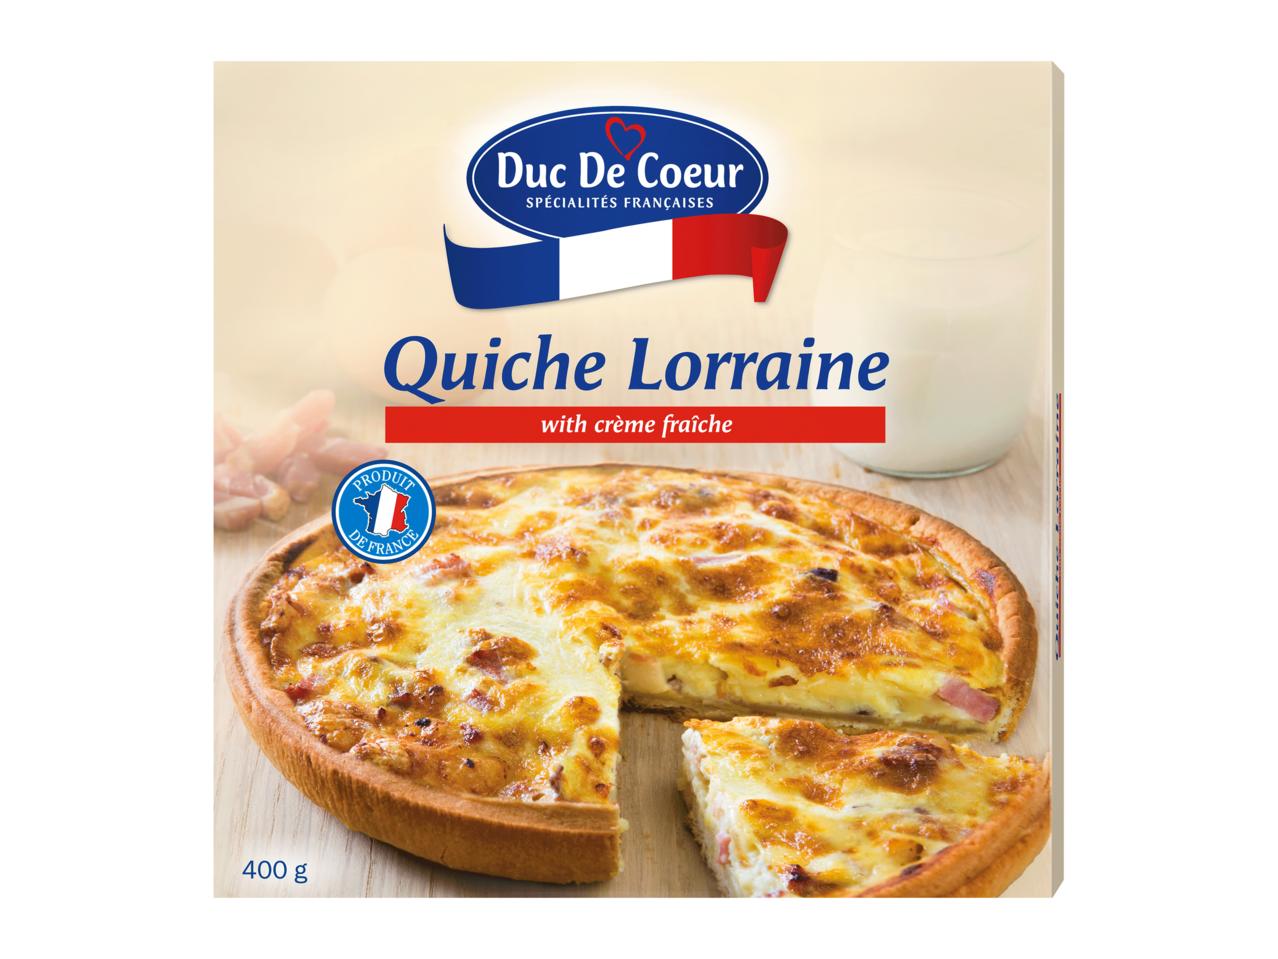 DUC DE COEUR Quiche Lorraine, Leek Pie